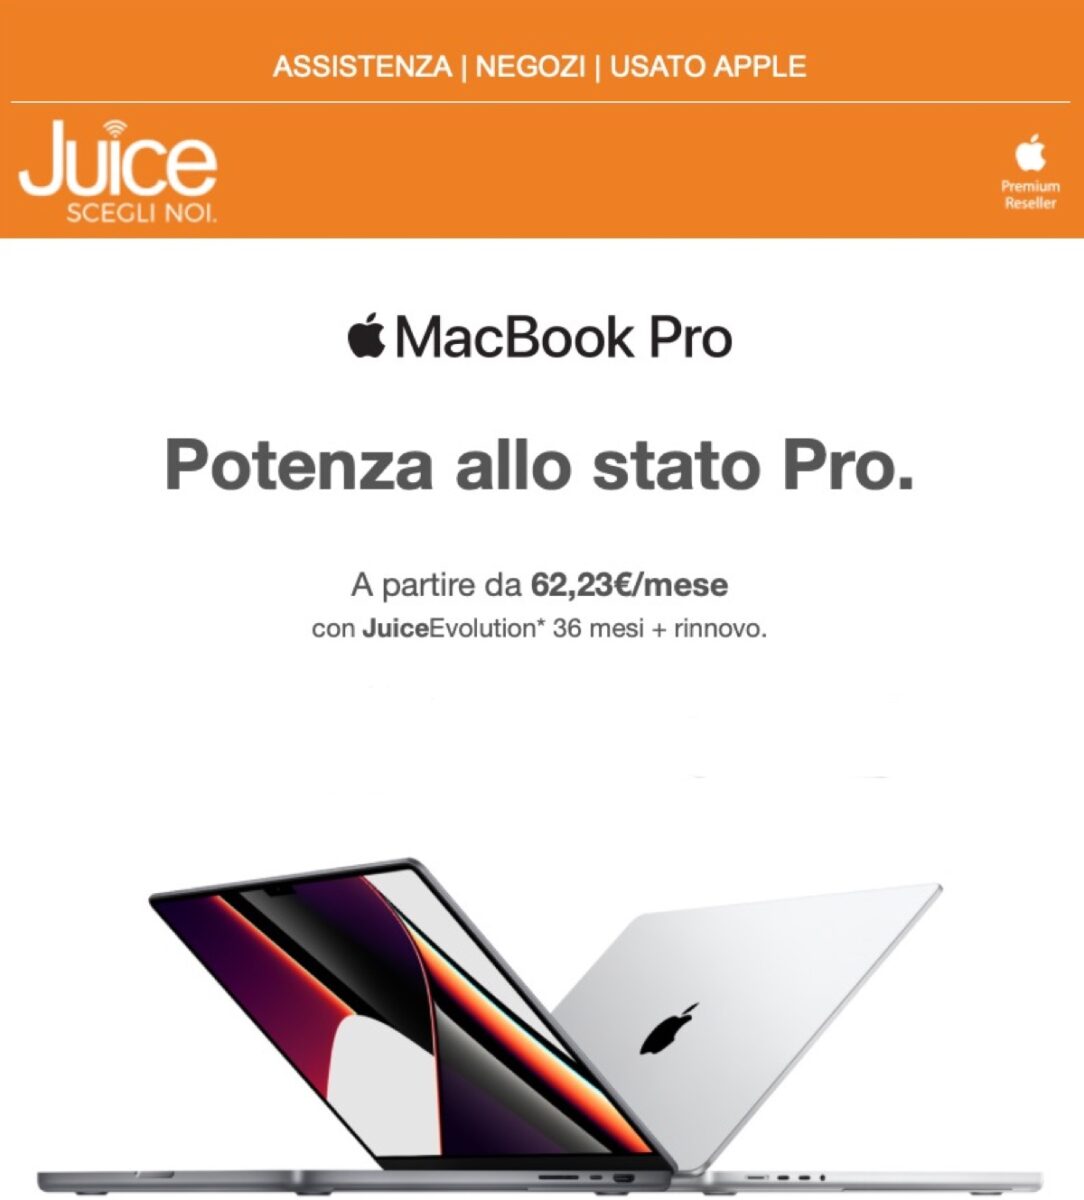 juice macbook pro 2021 in